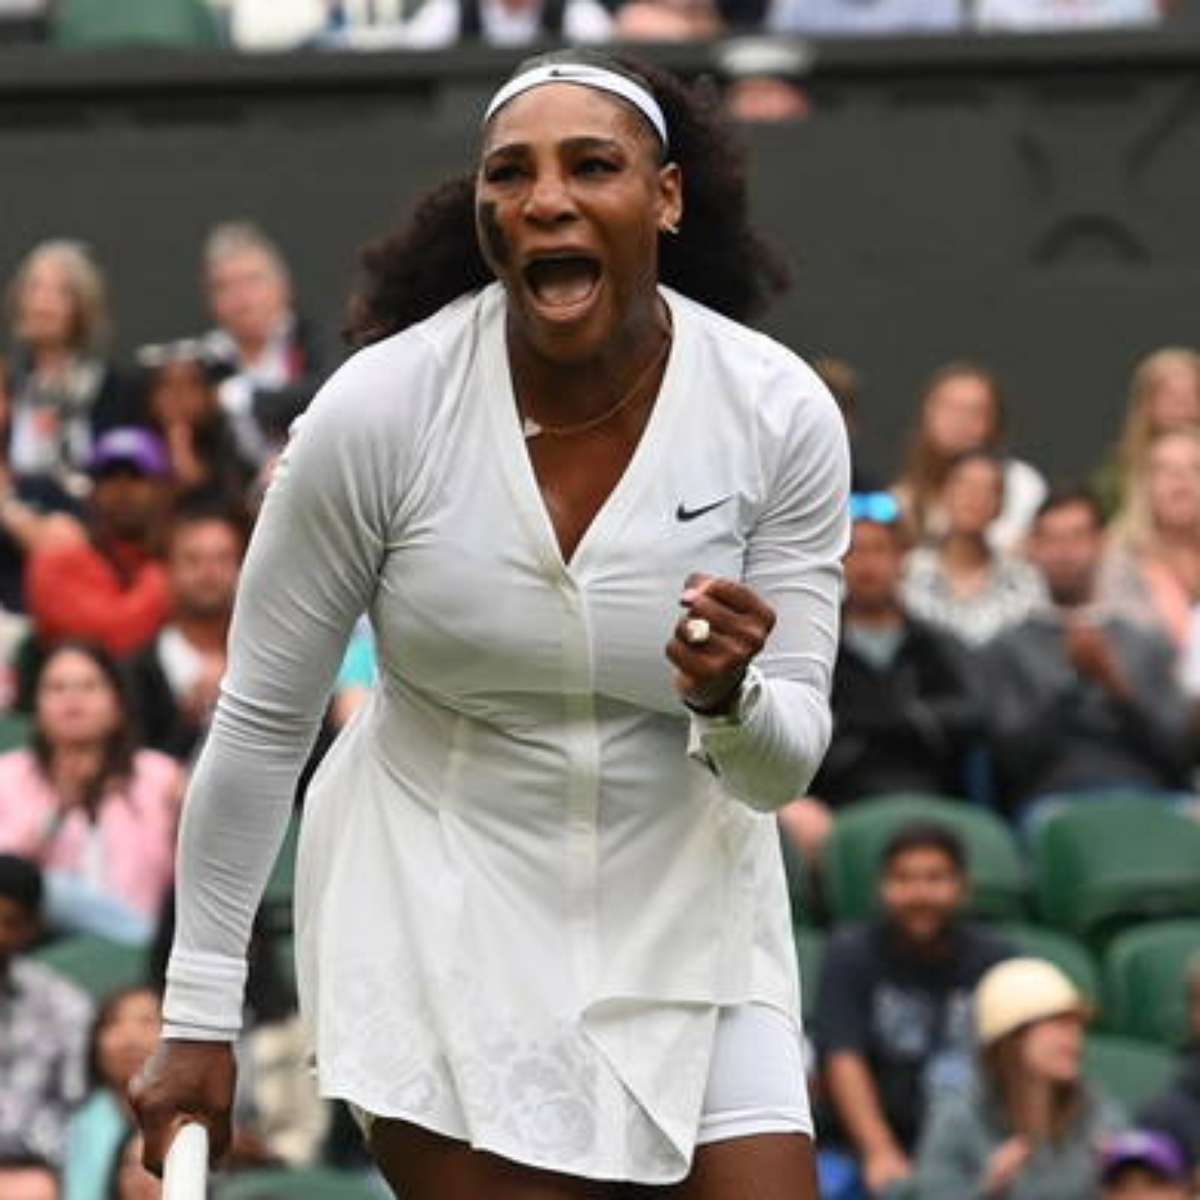 Serena se aposenta das quadras como a maior tenista de todos os tempos -  Dibradoras